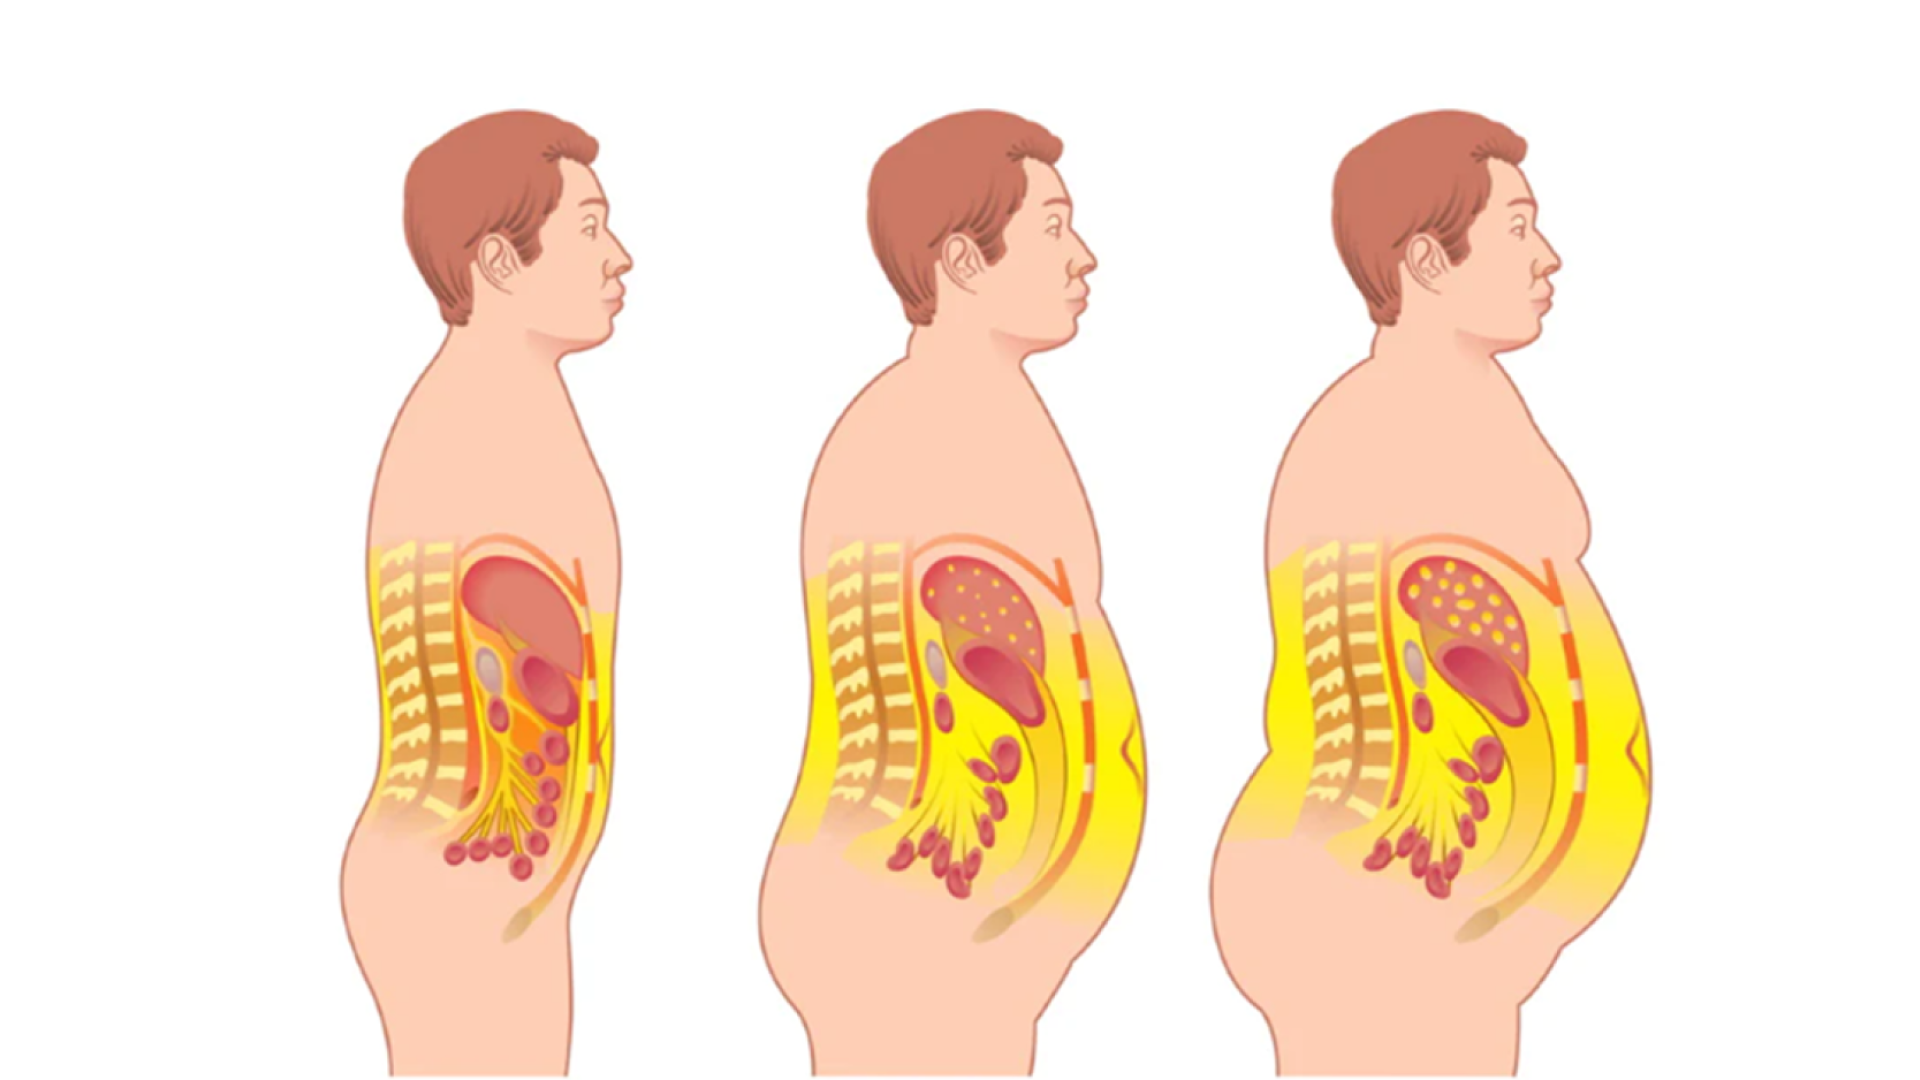 Висцеральное ожирение & ИМТ как предикторы рецидива ВЗК